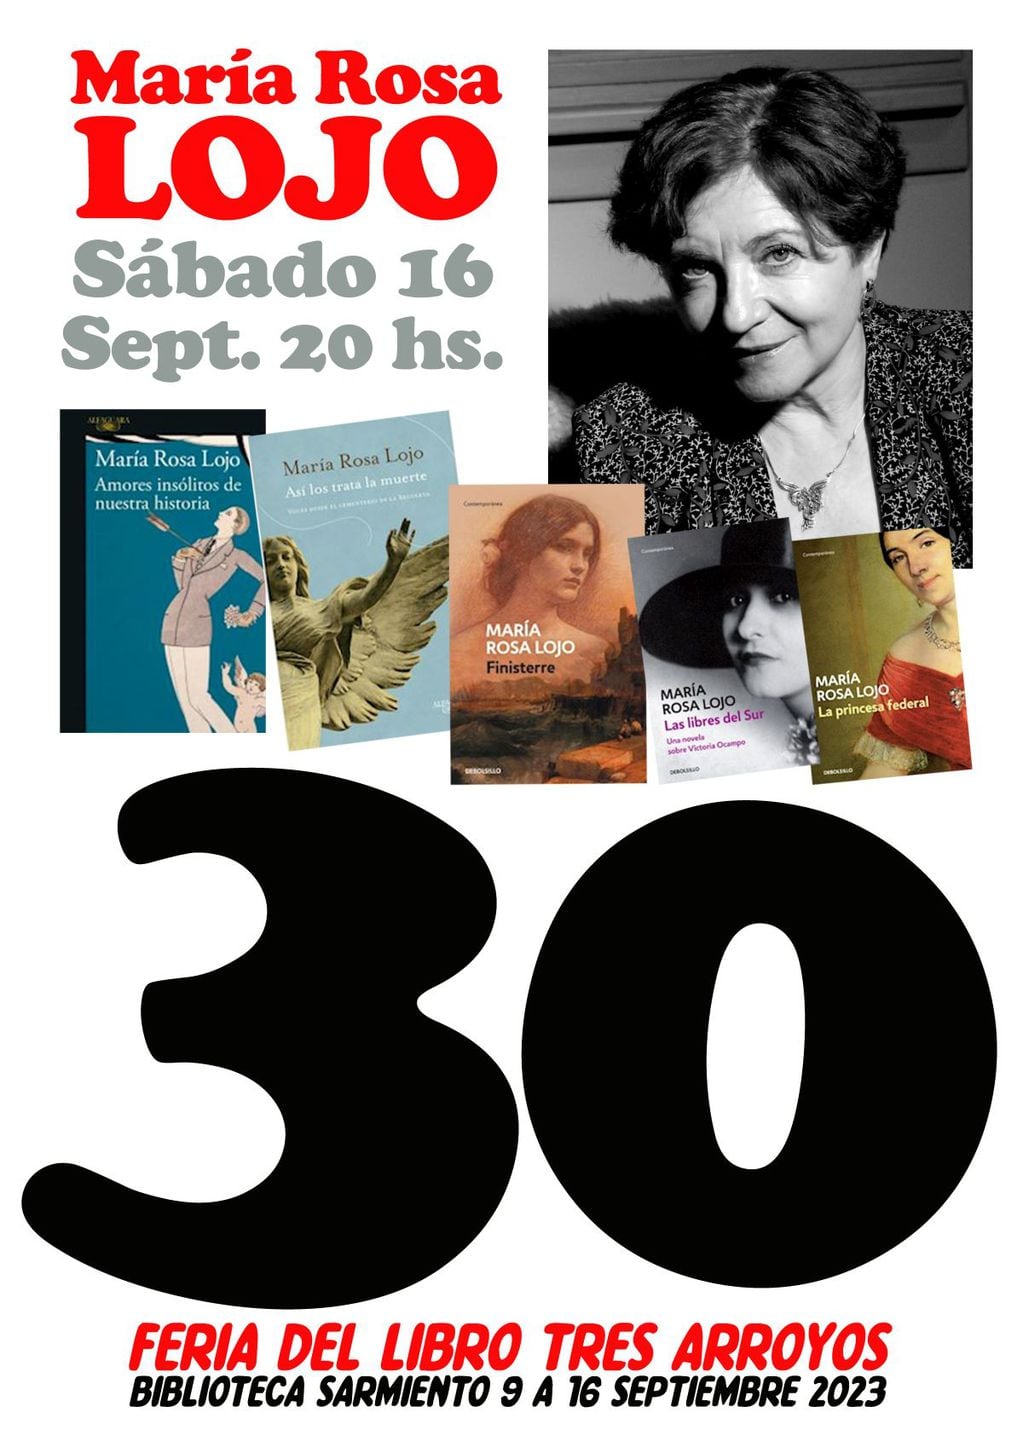 María Rosa Lojo cierra la Feria del Libro de Tres Arroyos